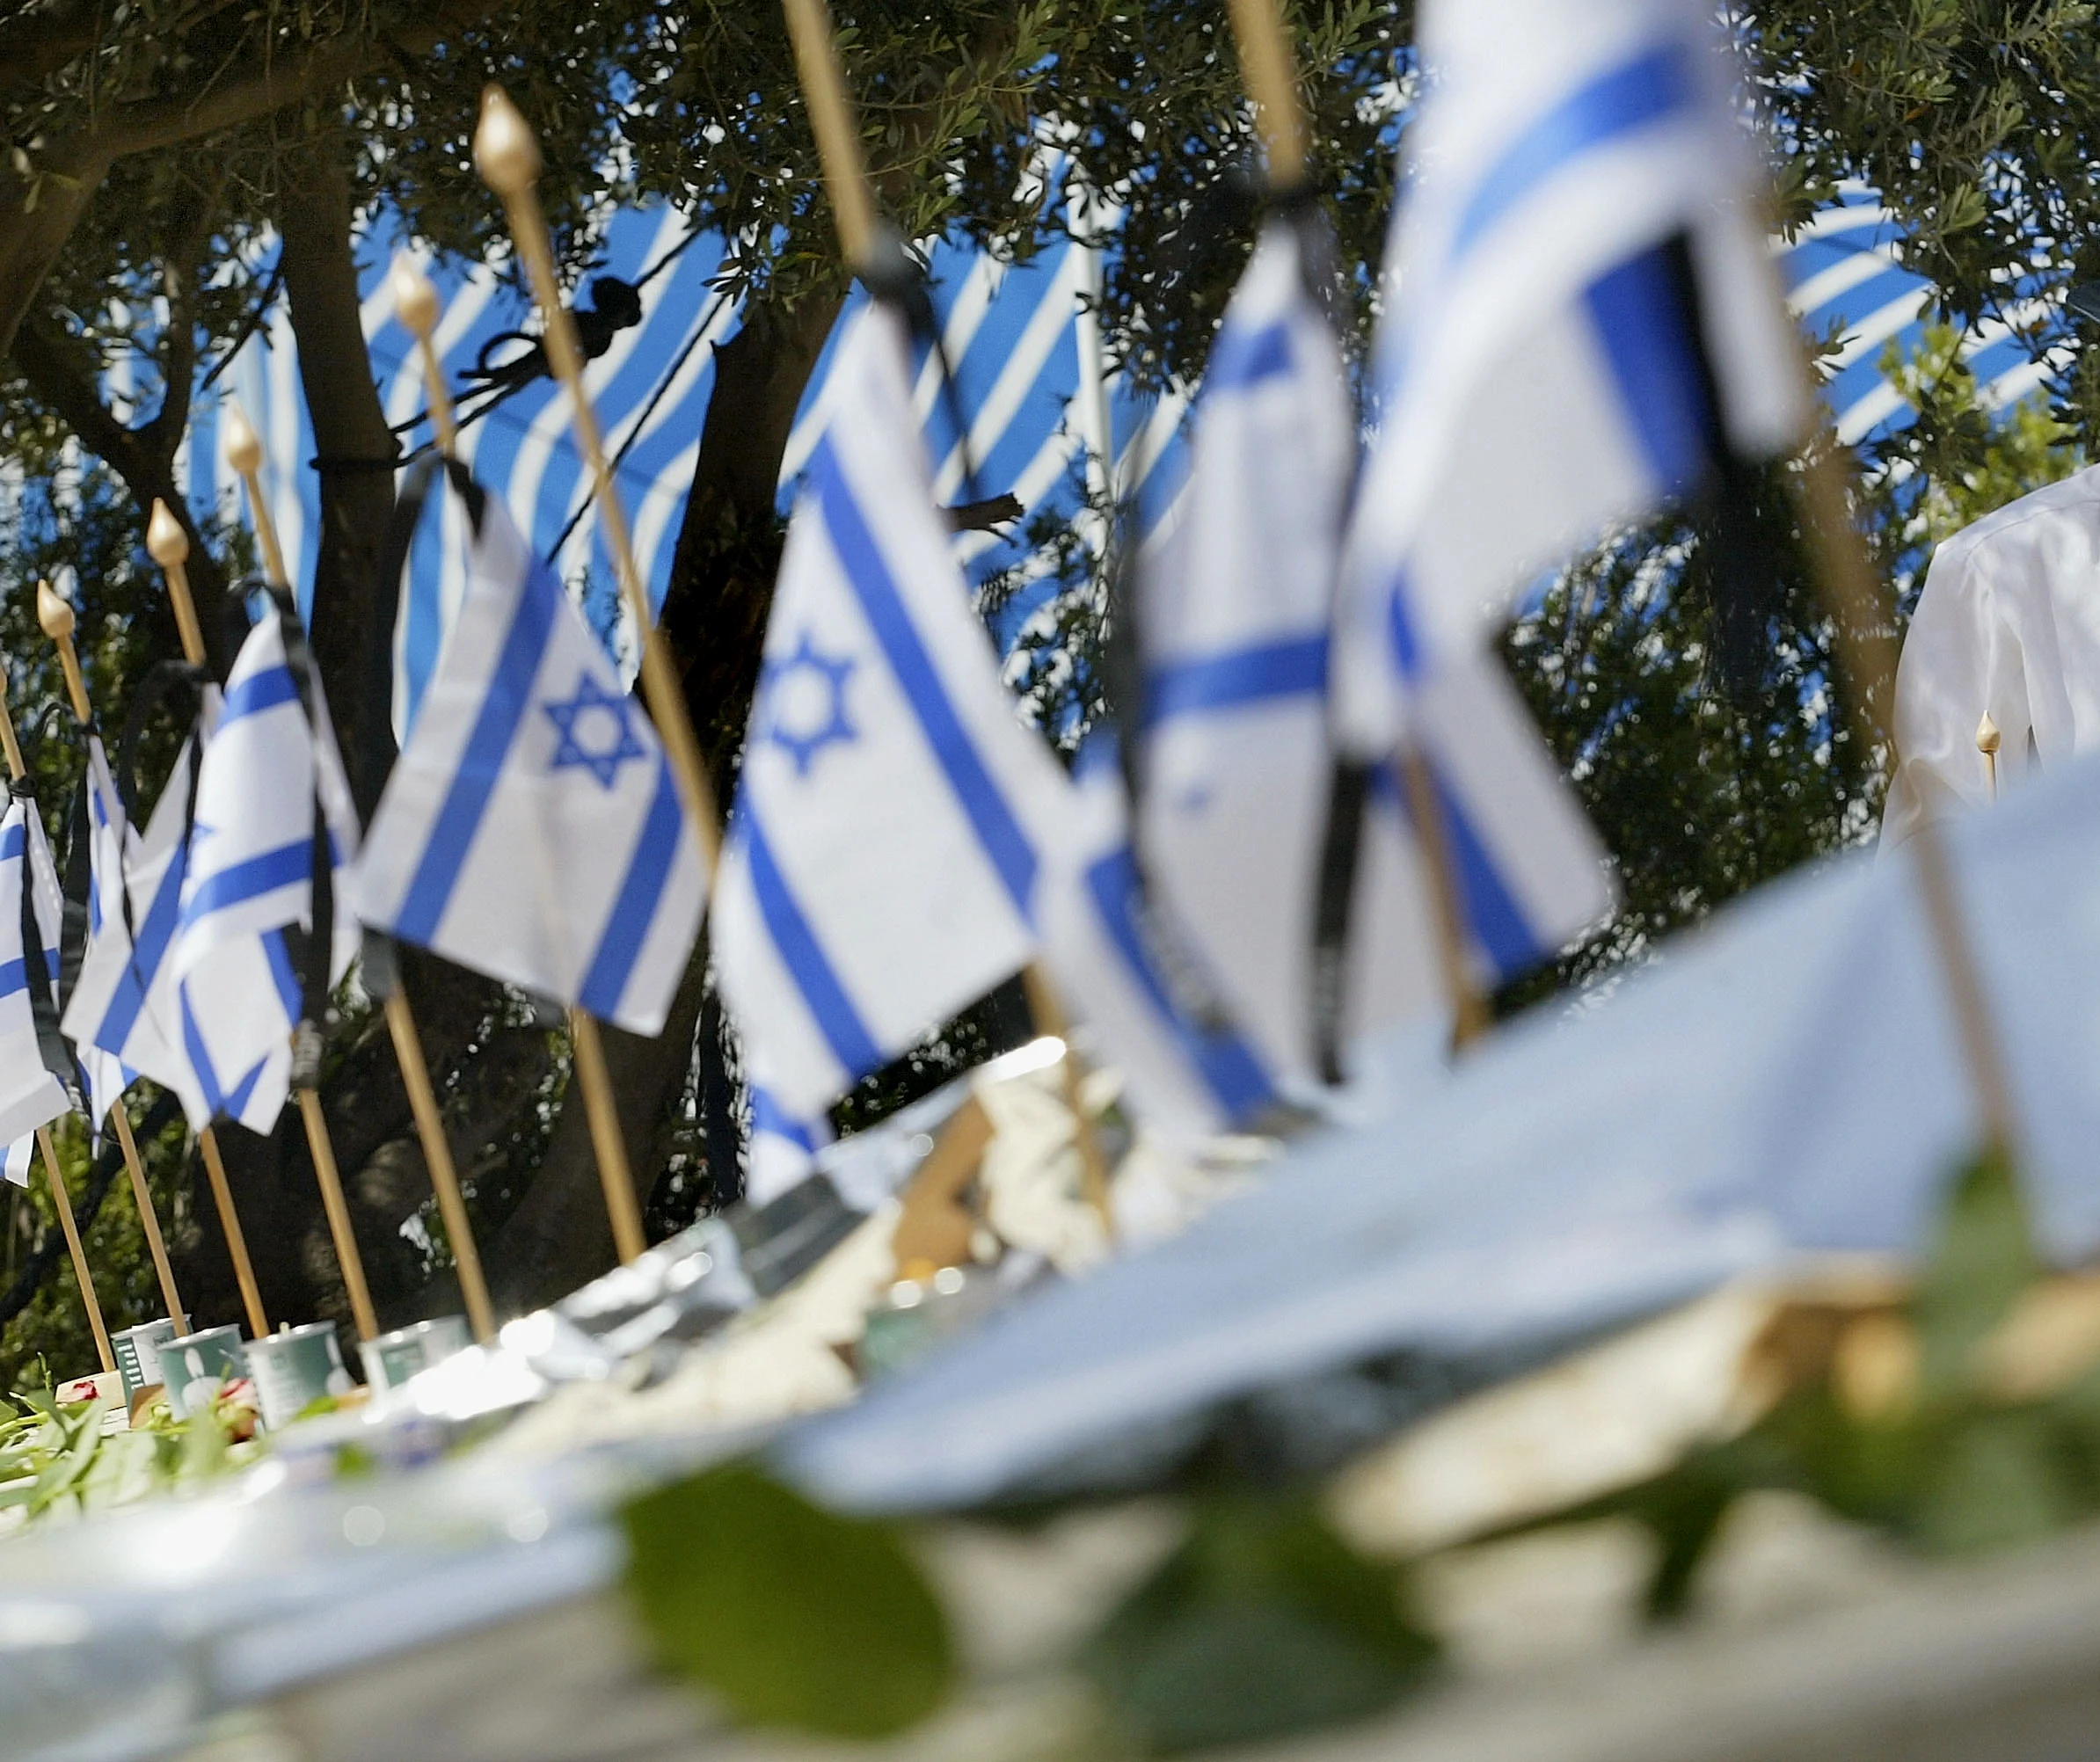 דגלי ישראל בבית עלמין צבאי ביום הזיכרון